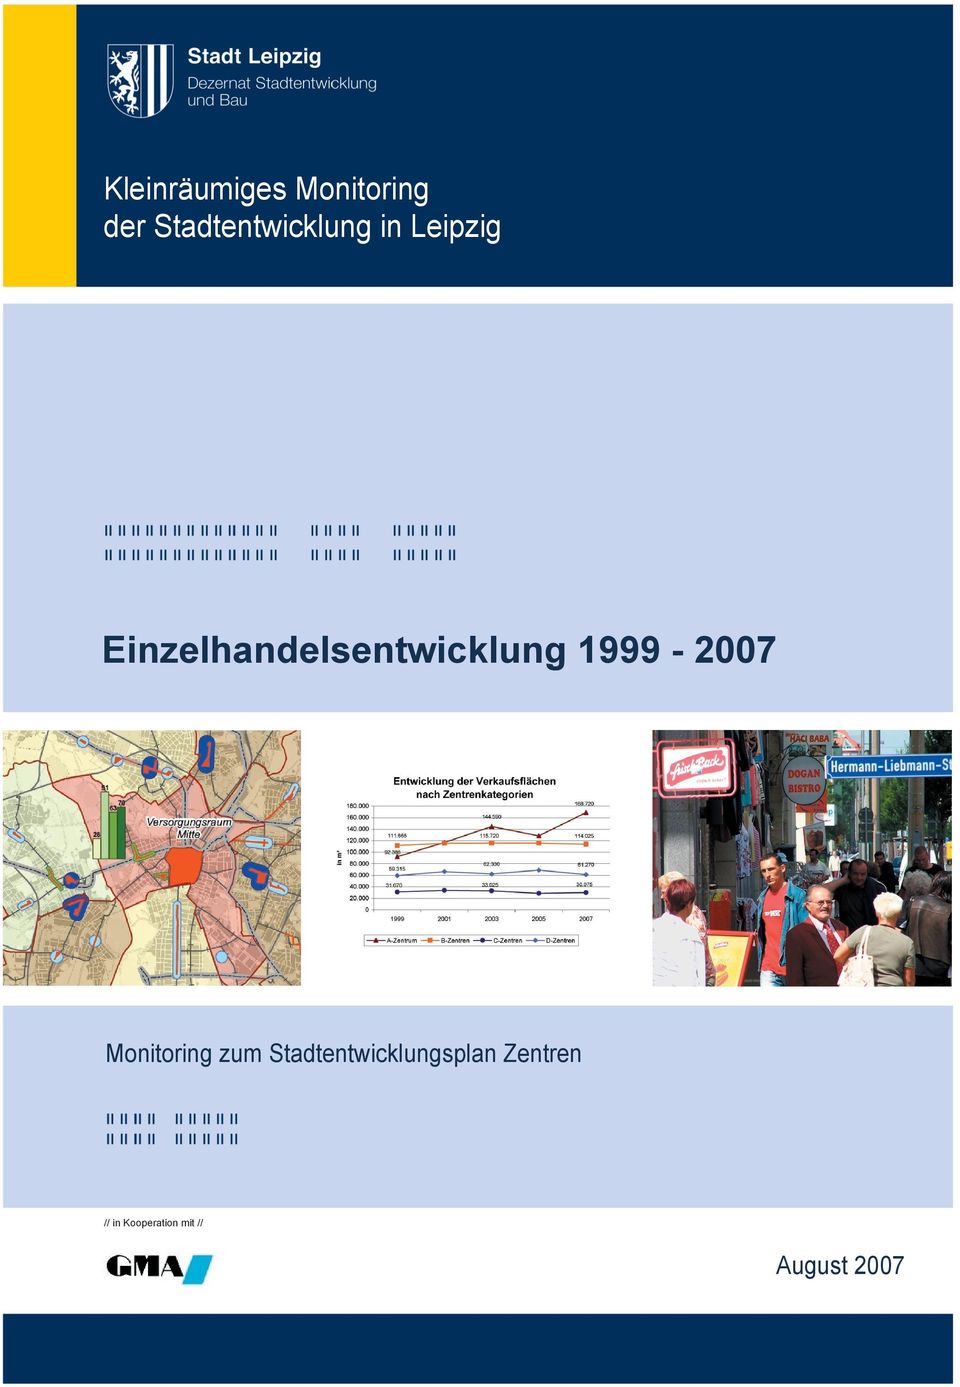 Einzelhandelsentwicklung 1999-2007